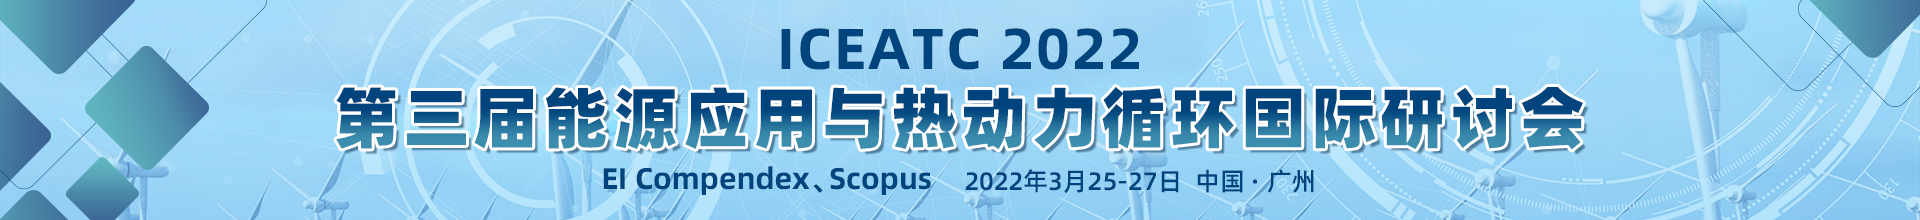 3月武汉-ICEATC-2022-学术会议云PC端1920x220-陈军-20211116.jpg